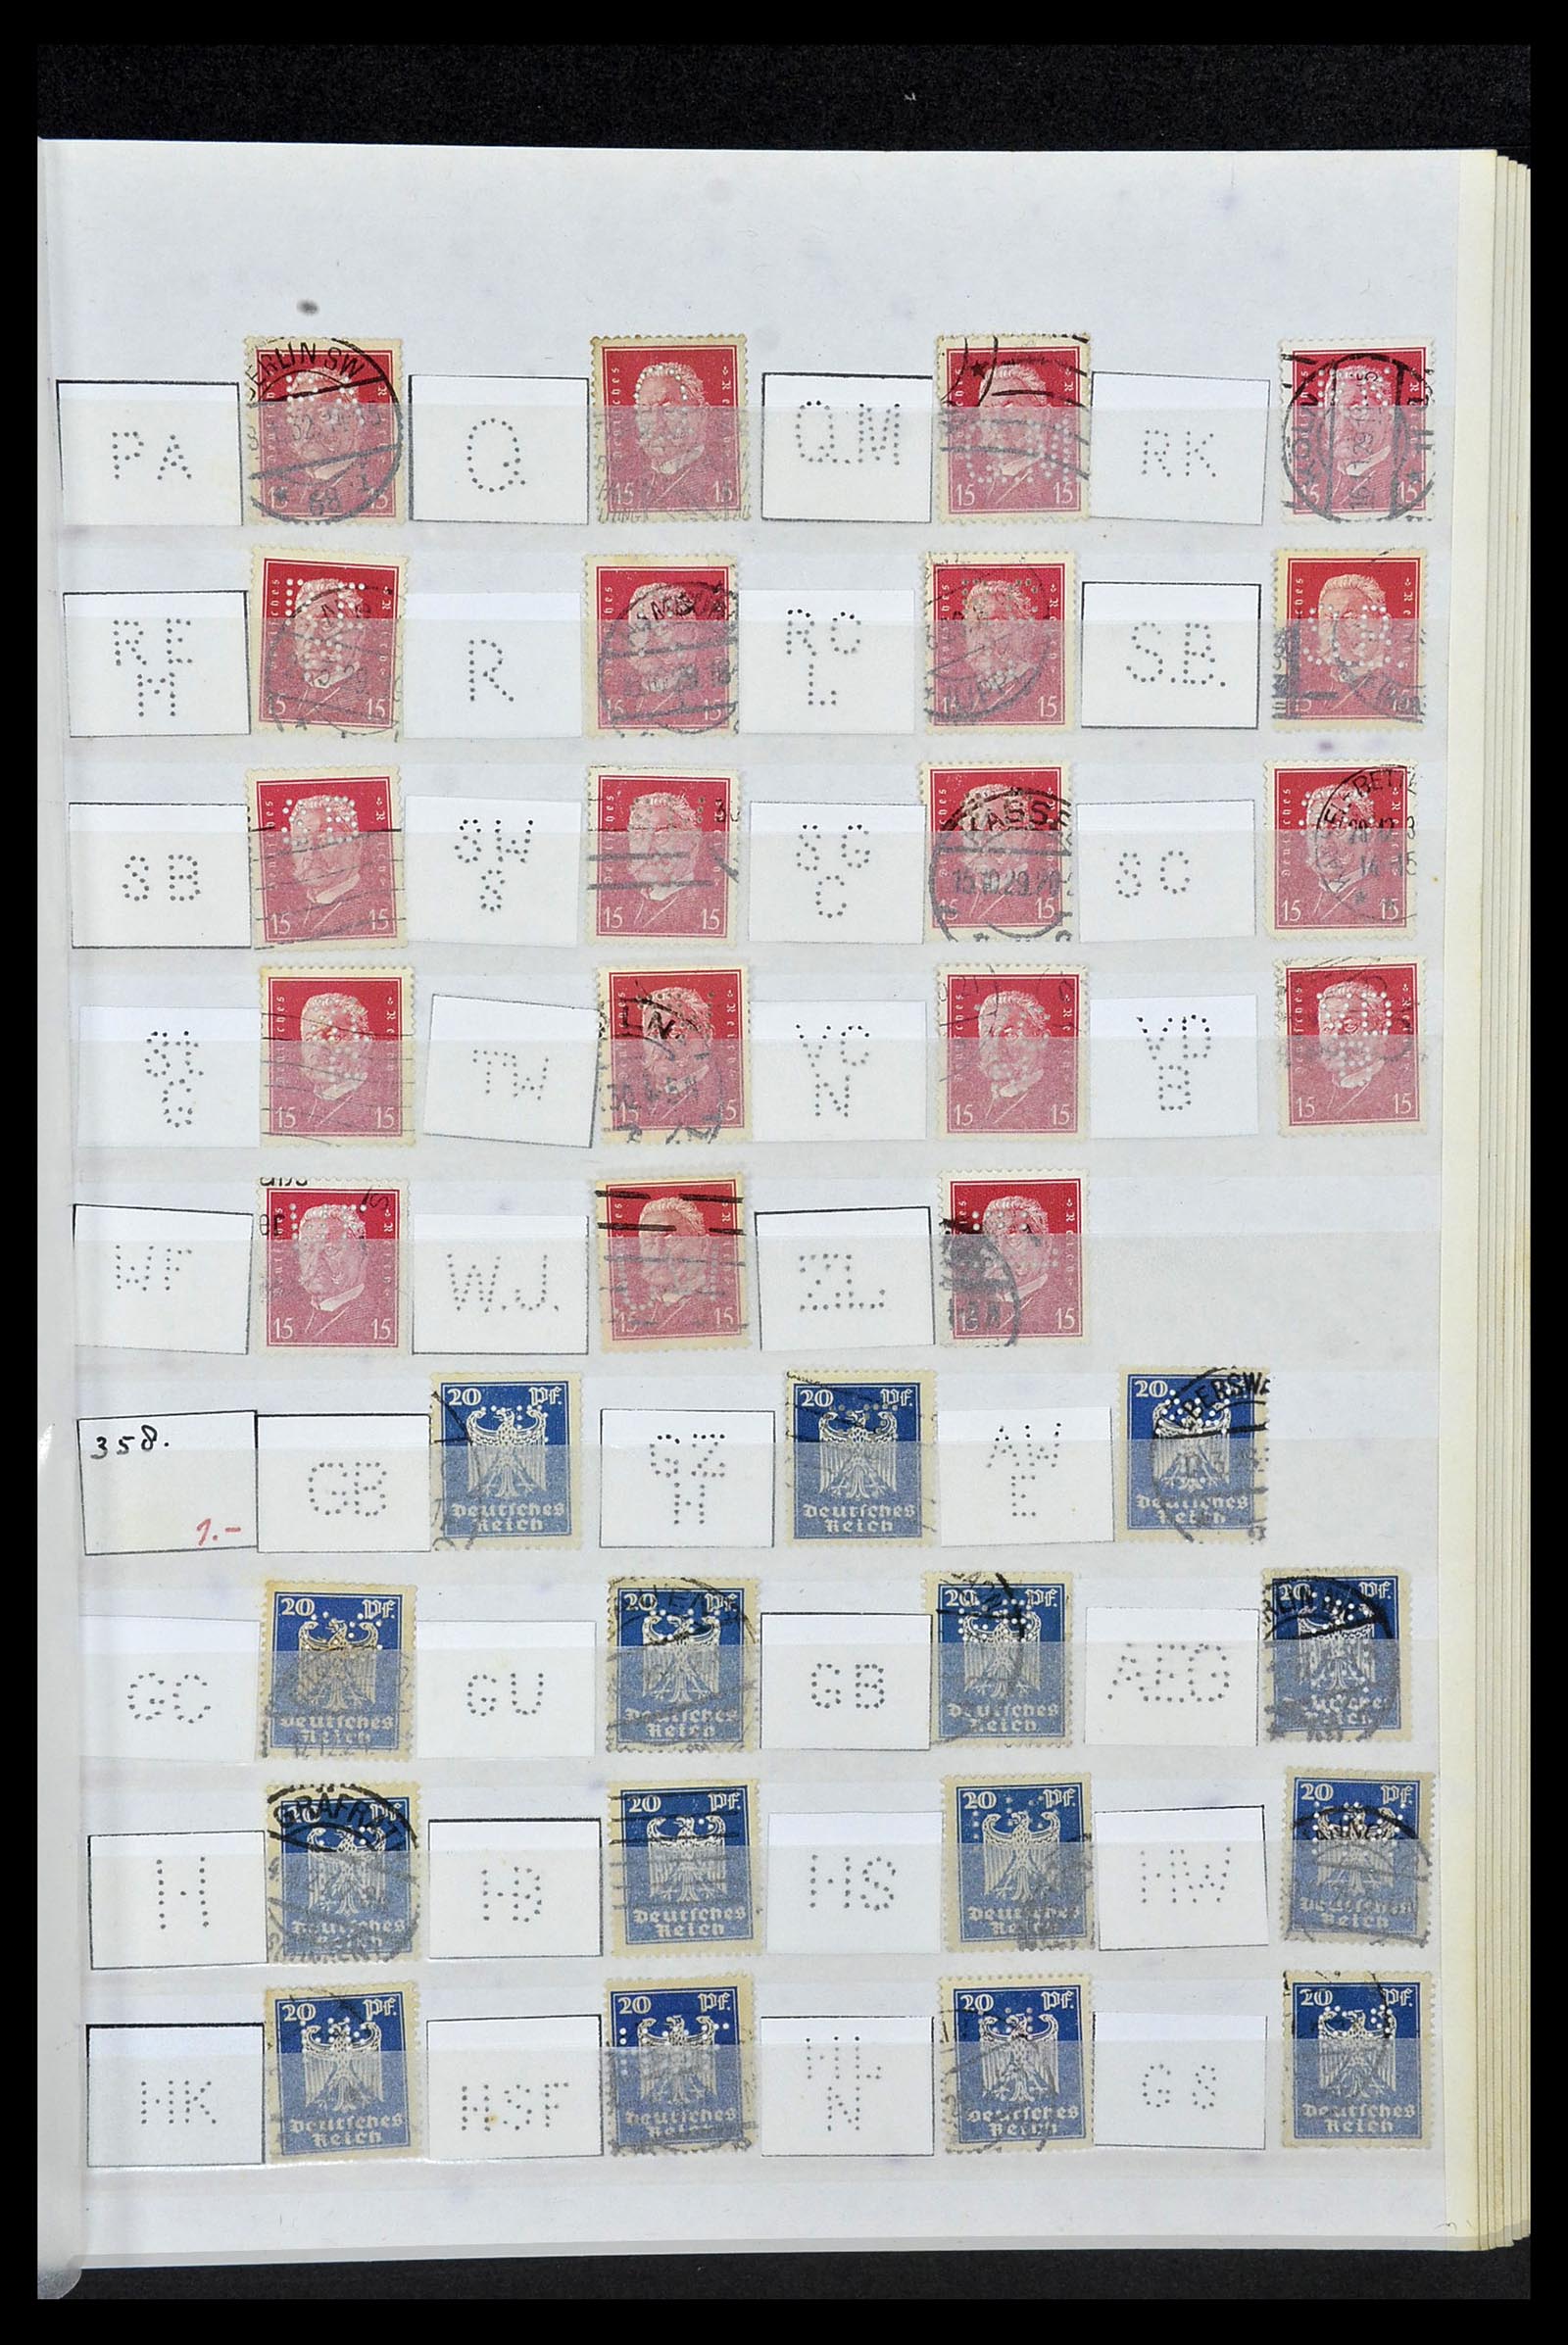 34071 033 - Stamp collection 34071 German Reich perfins 1923-1930.